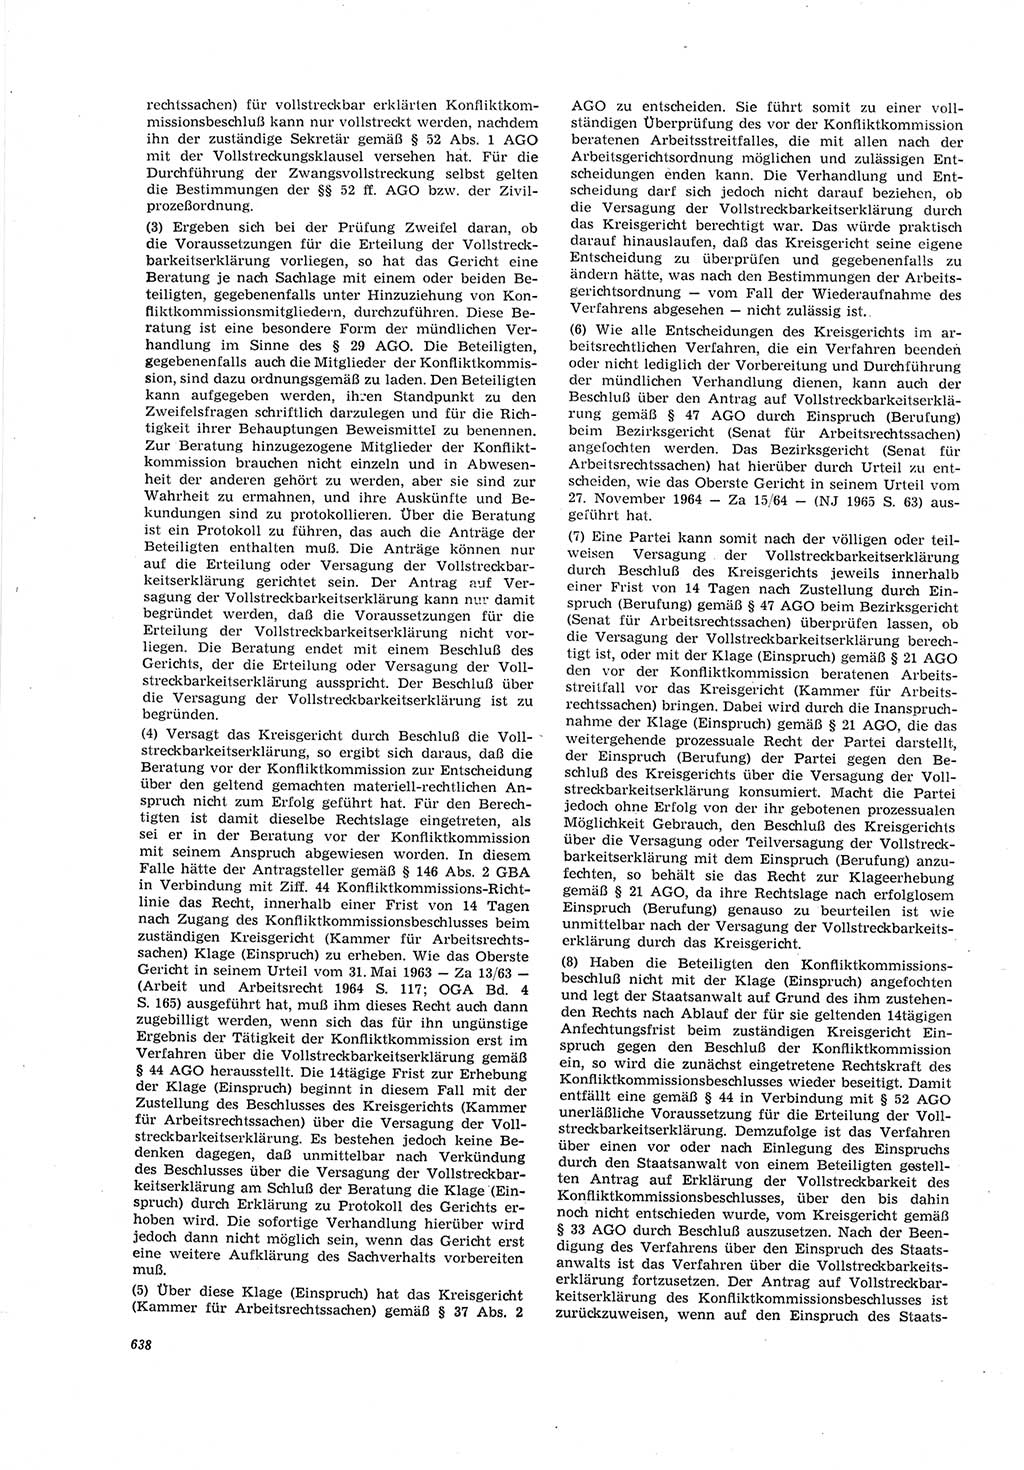 Neue Justiz (NJ), Zeitschrift für Recht und Rechtswissenschaft [Deutsche Demokratische Republik (DDR)], 19. Jahrgang 1965, Seite 638 (NJ DDR 1965, S. 638)